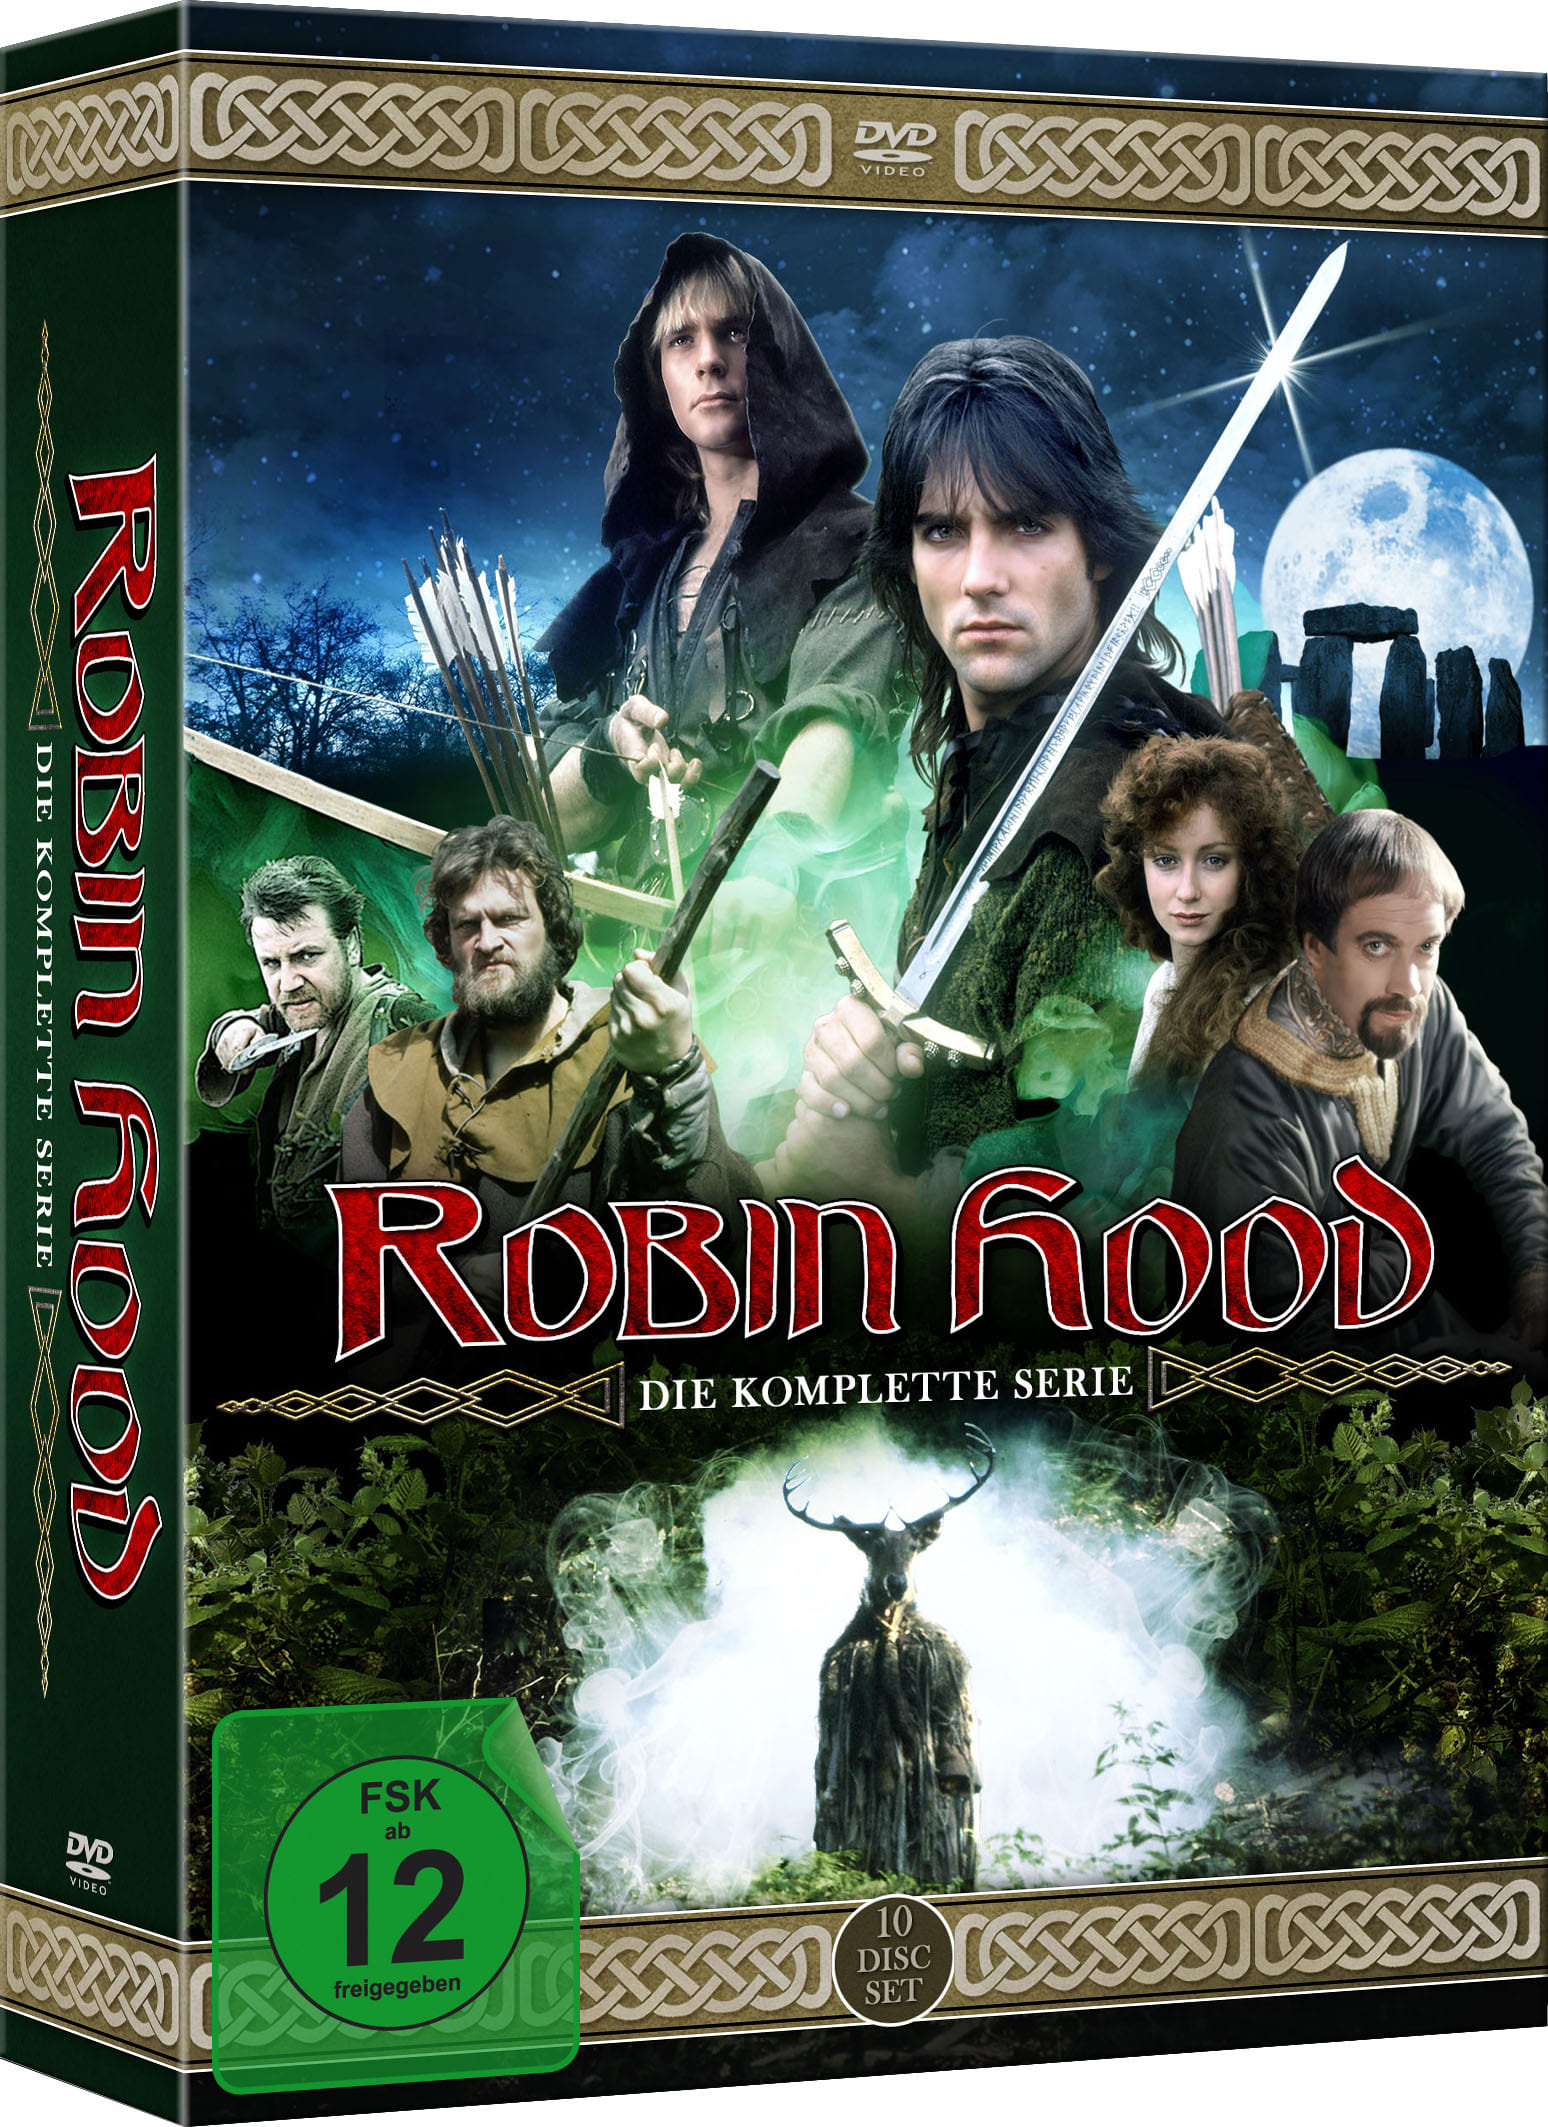 Robin Hood - Die komplette Serie (DVD) Image 2